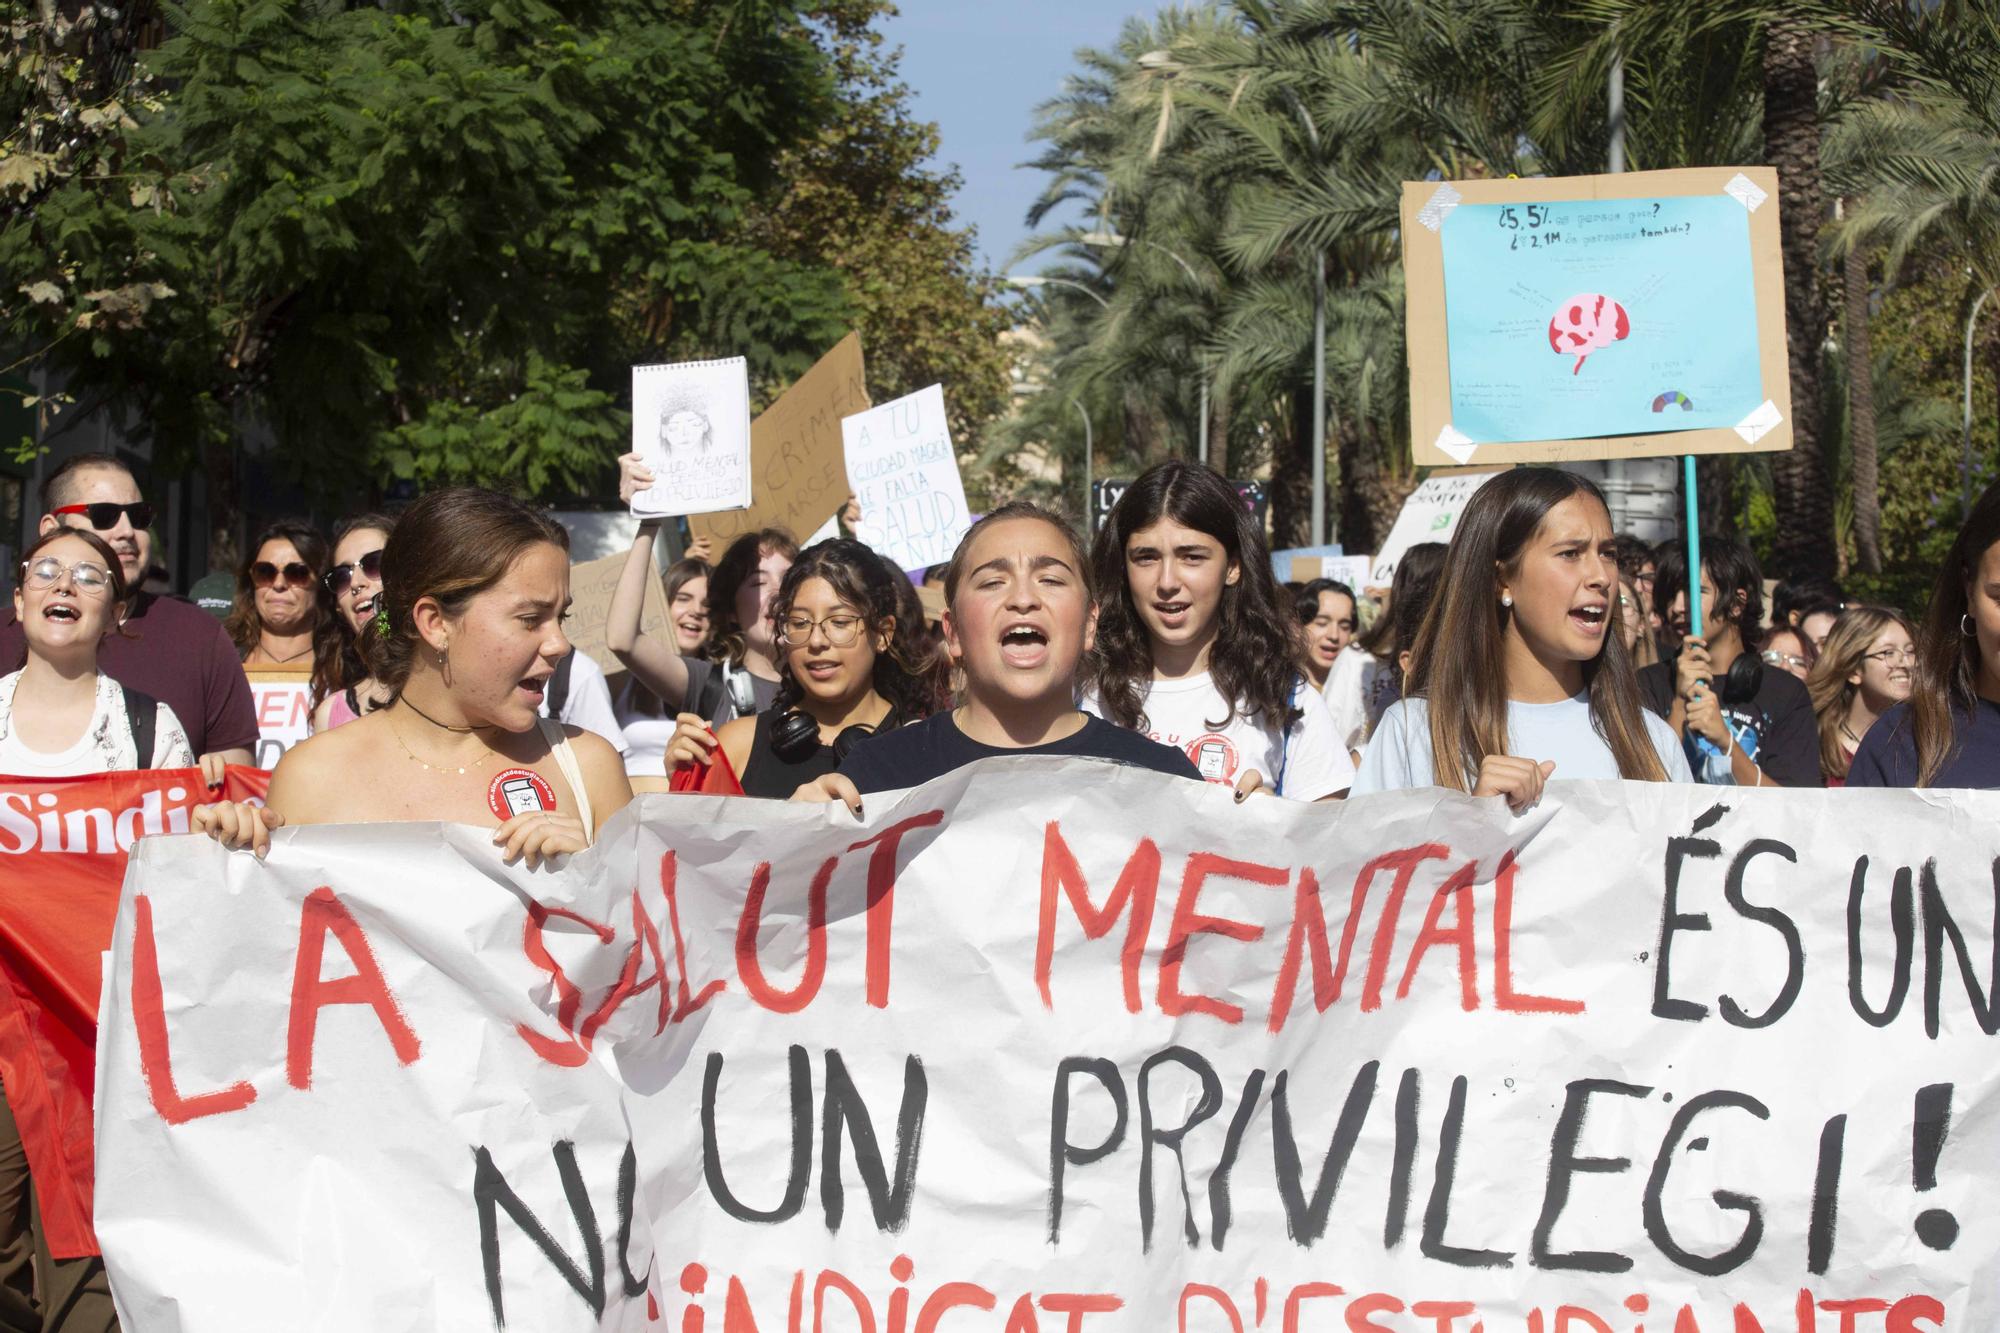 Estudiantes de Alicante reclamar más medios para la salud mental a Sanidad